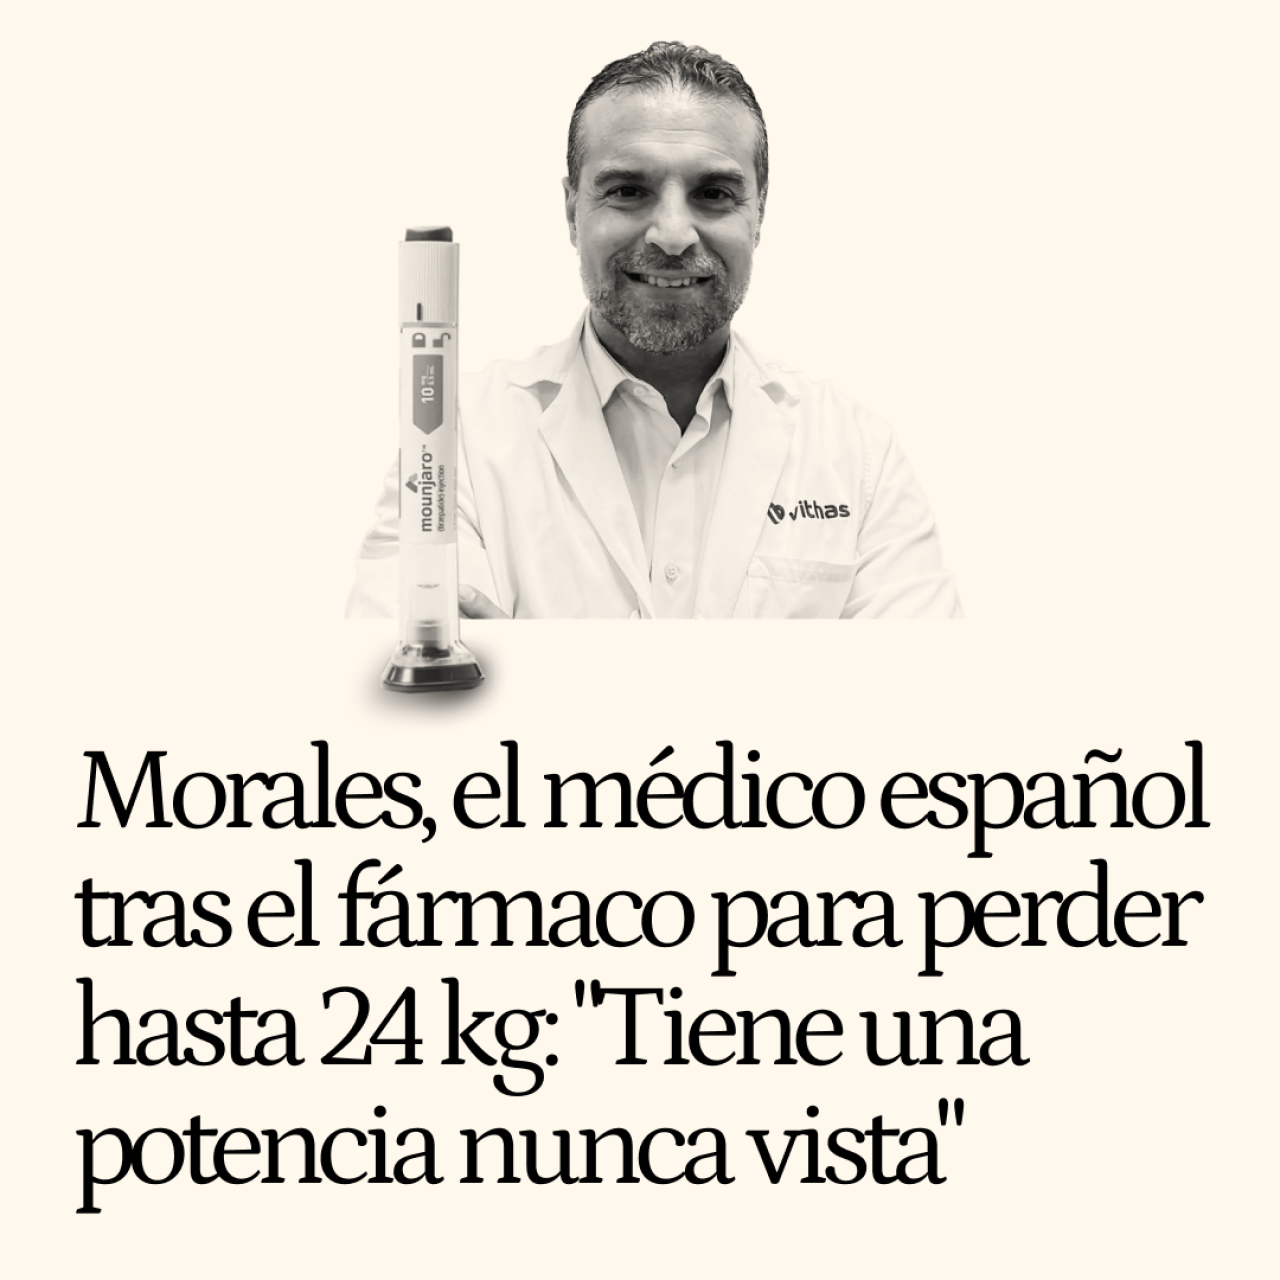 Morales, el médico español tras el fármaco para perder hasta 24 kg: "Tiene una potencia nunca vista"